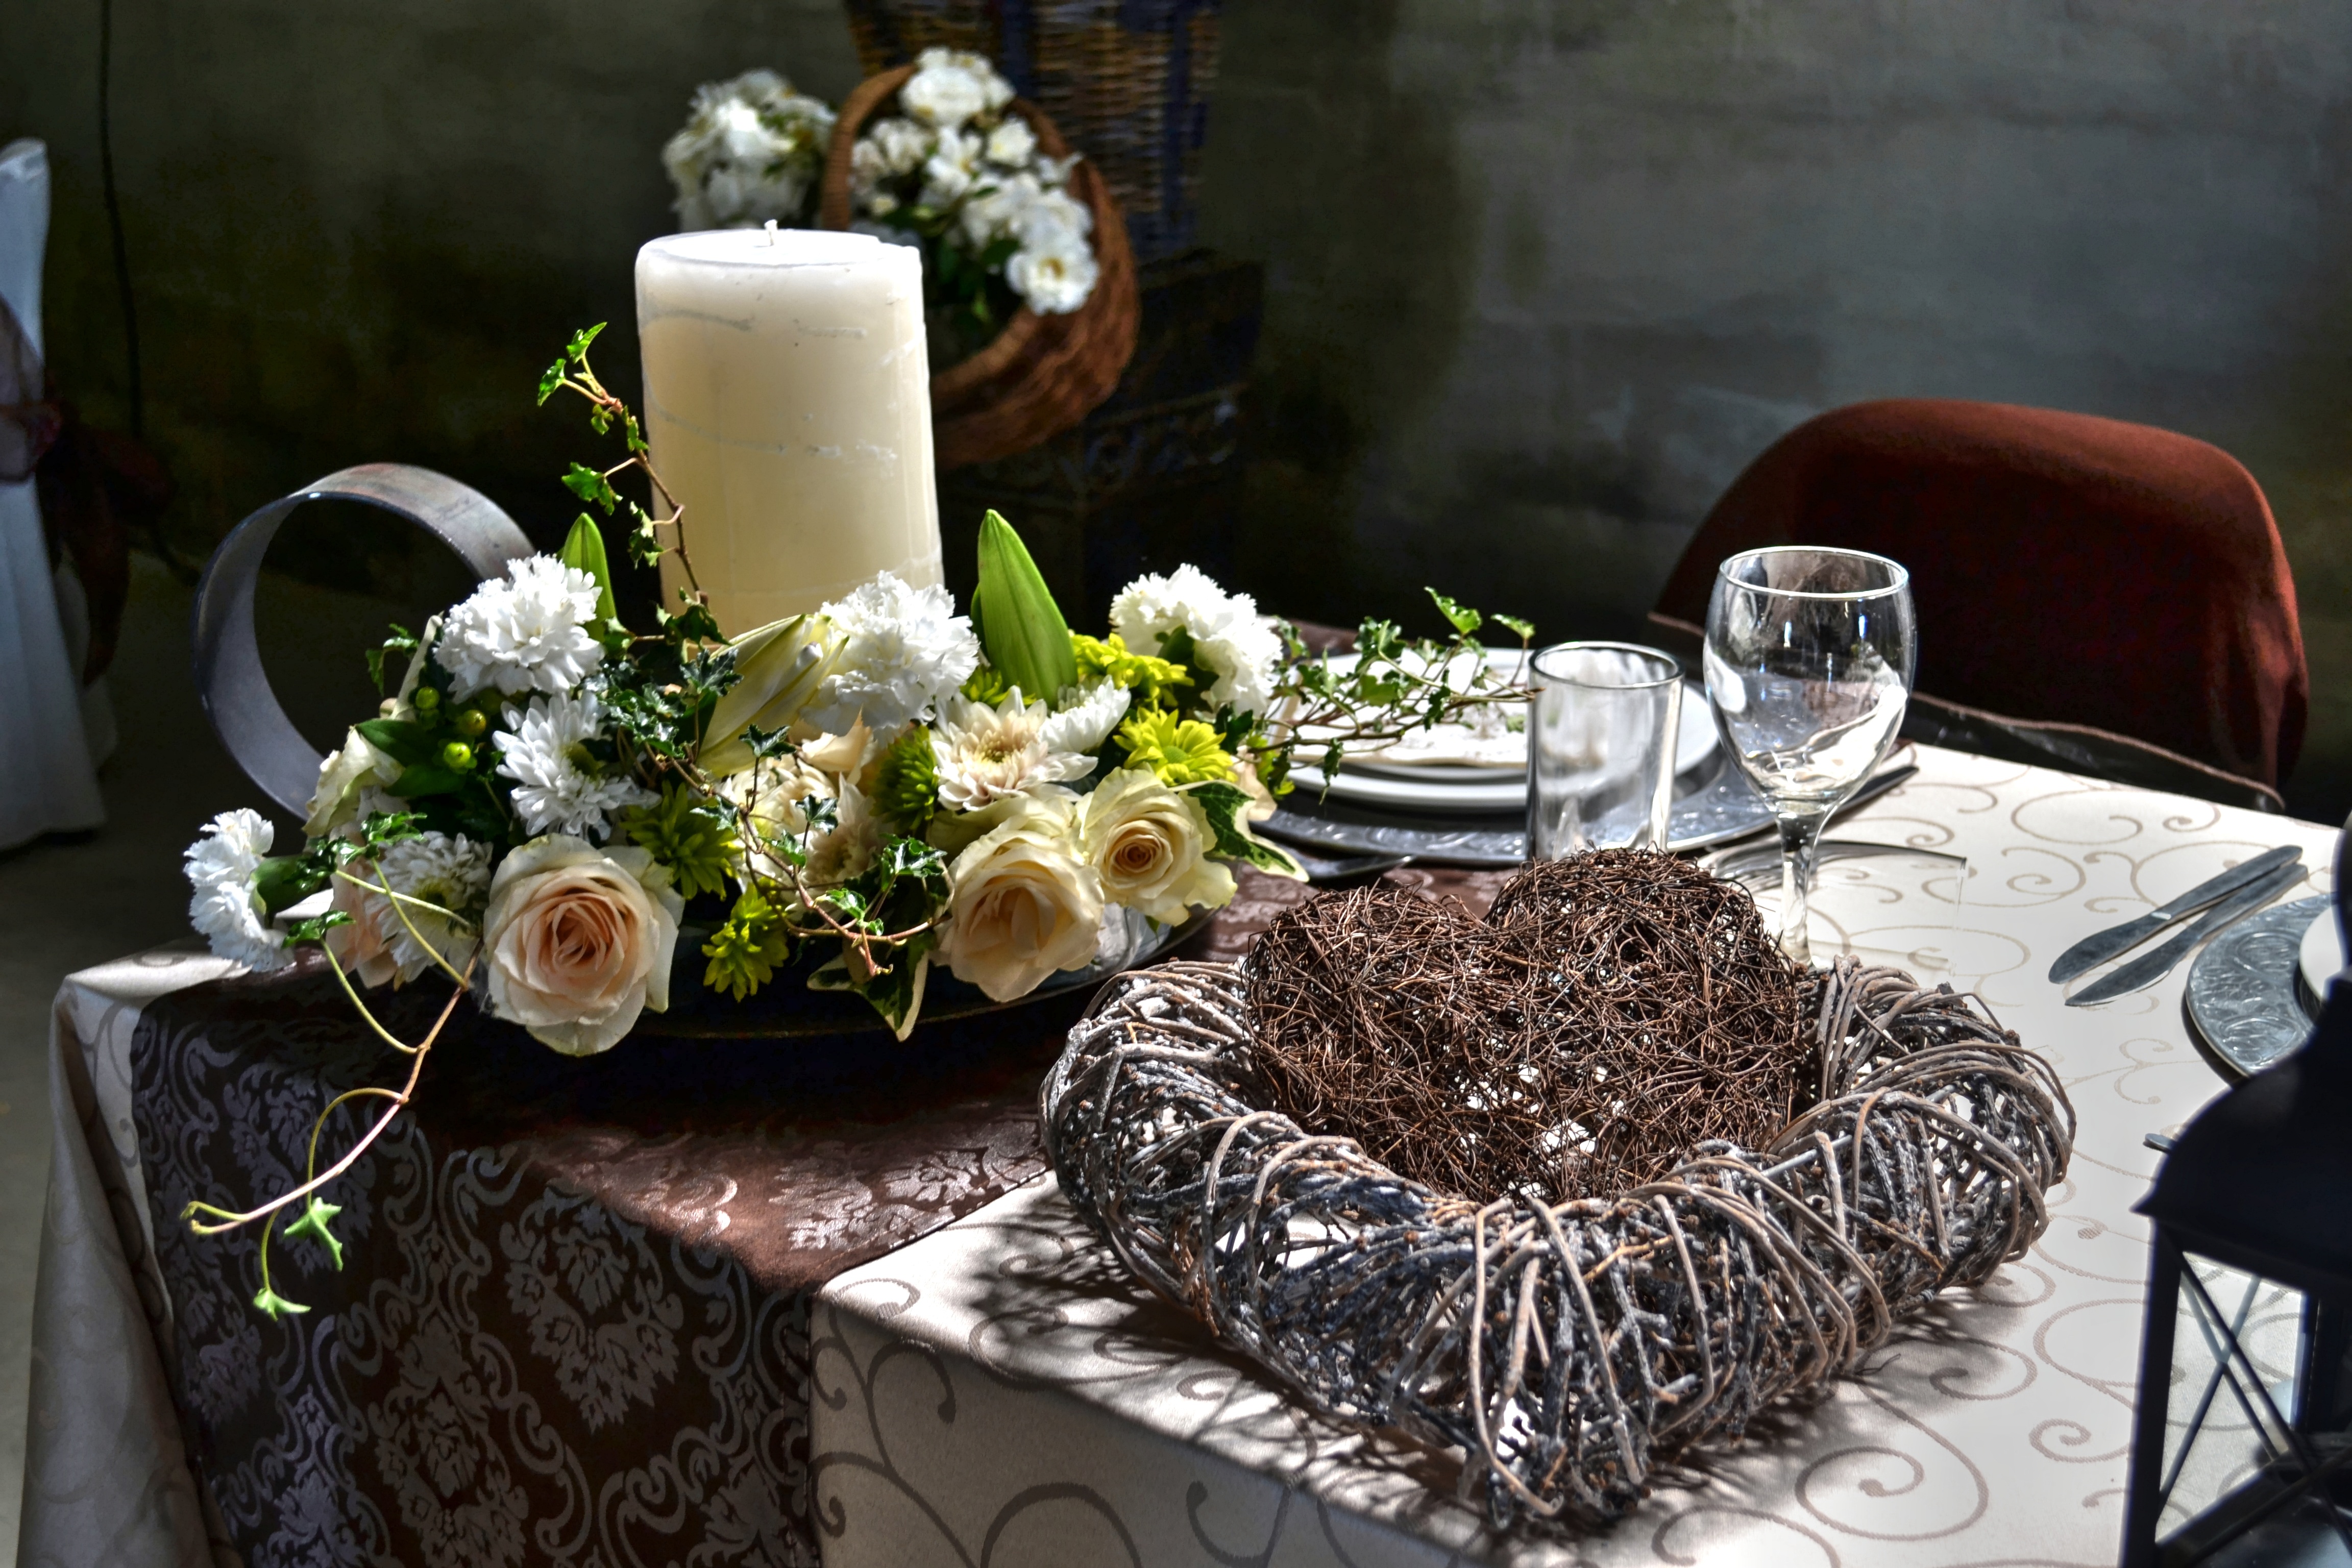 flowers, miscellanea, miscellaneous, bouquet, table, decoration, candle, serving